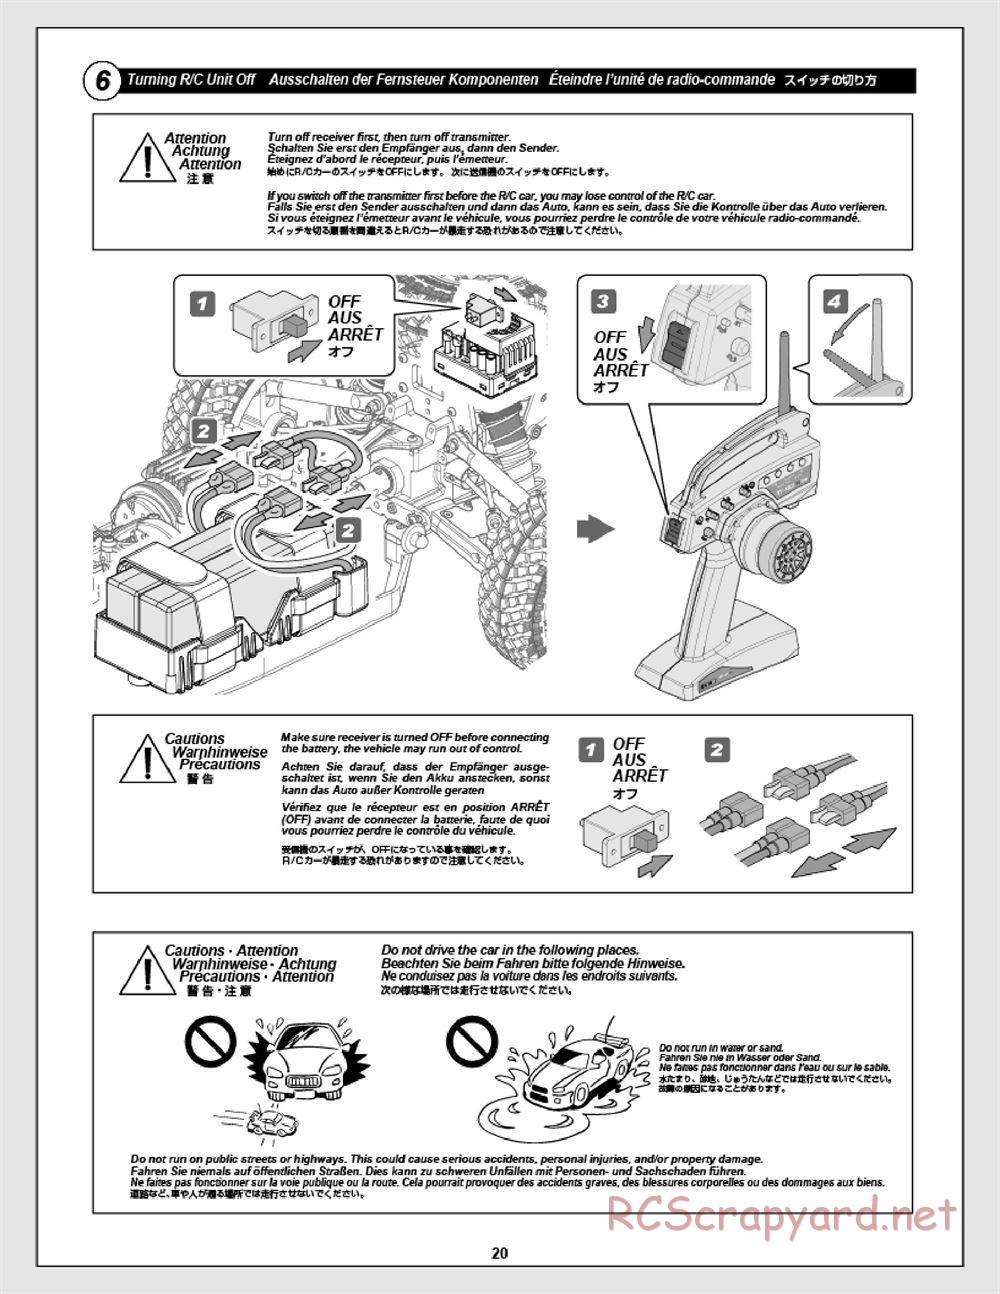 HPI - Apache C1 Flux - Manual - Page 20